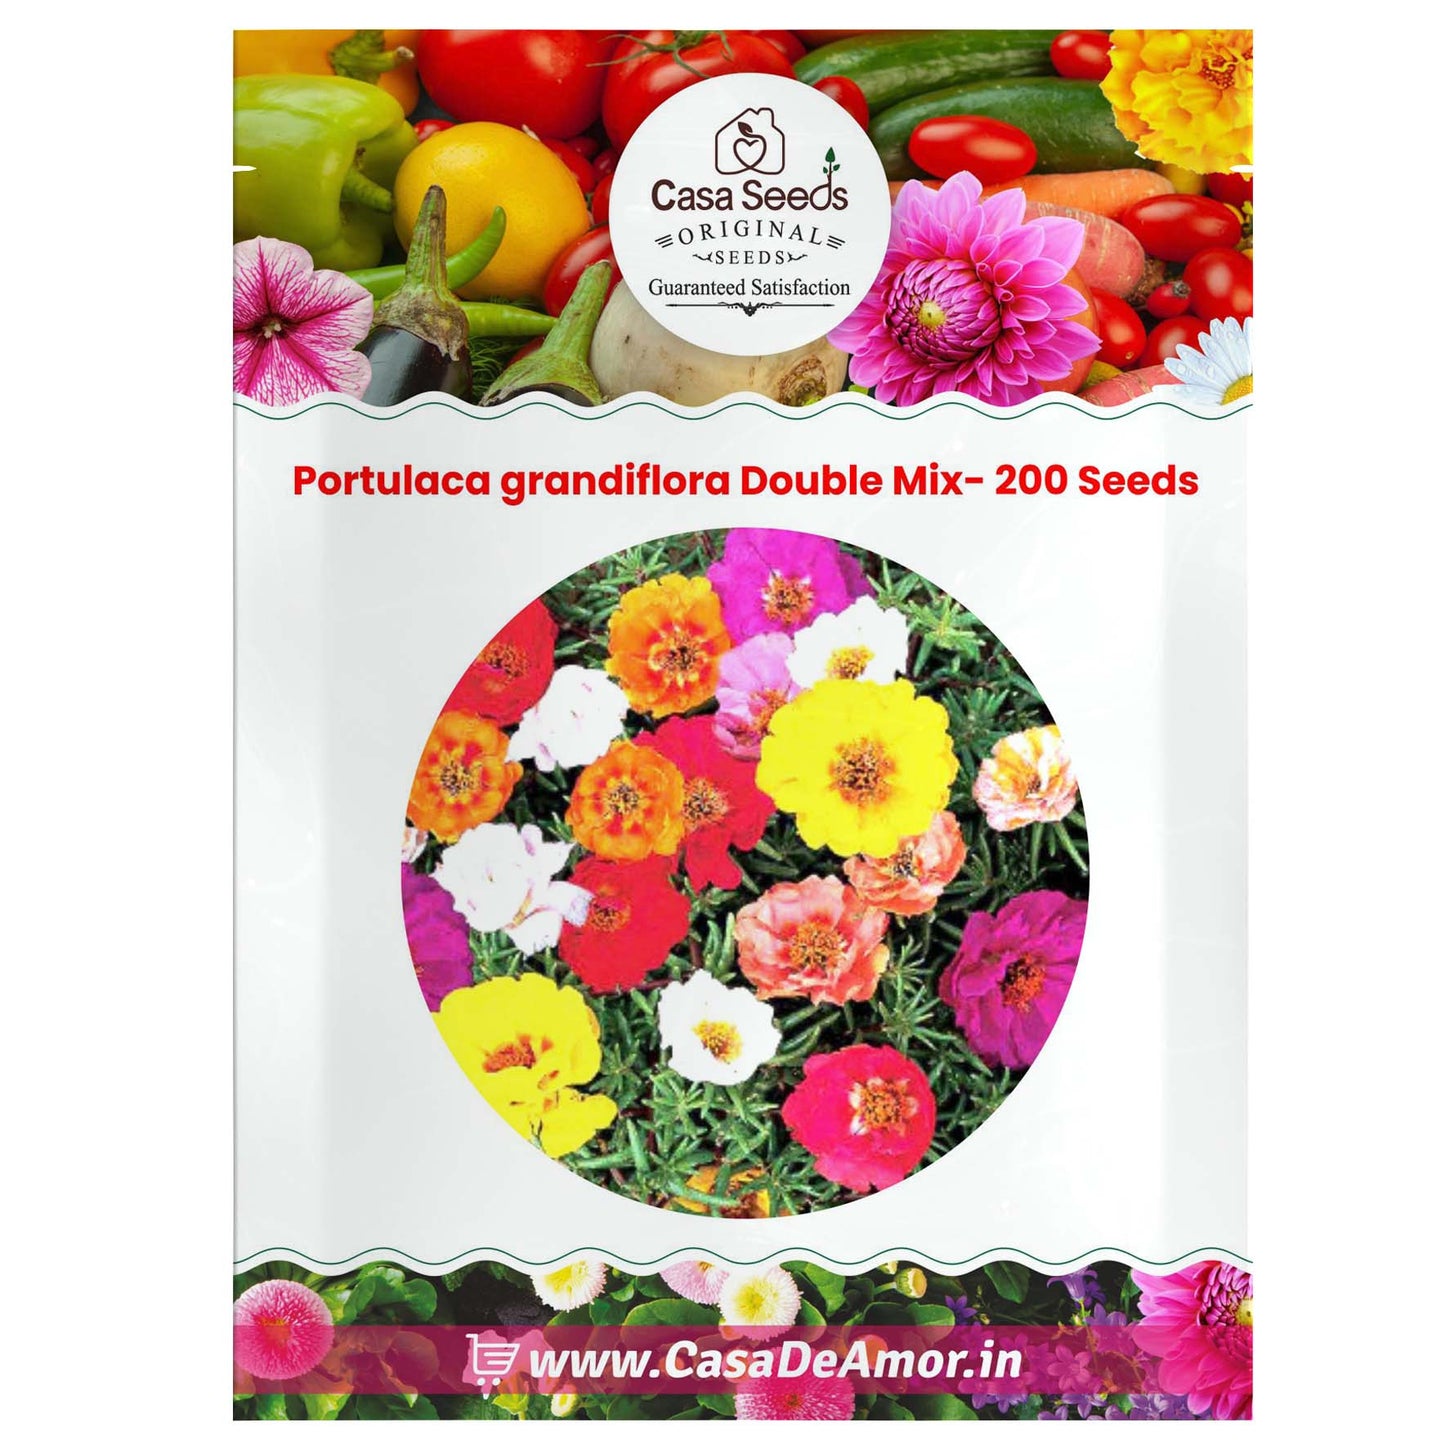 Portulaca grandiflora Double Mix- 200 Seeds